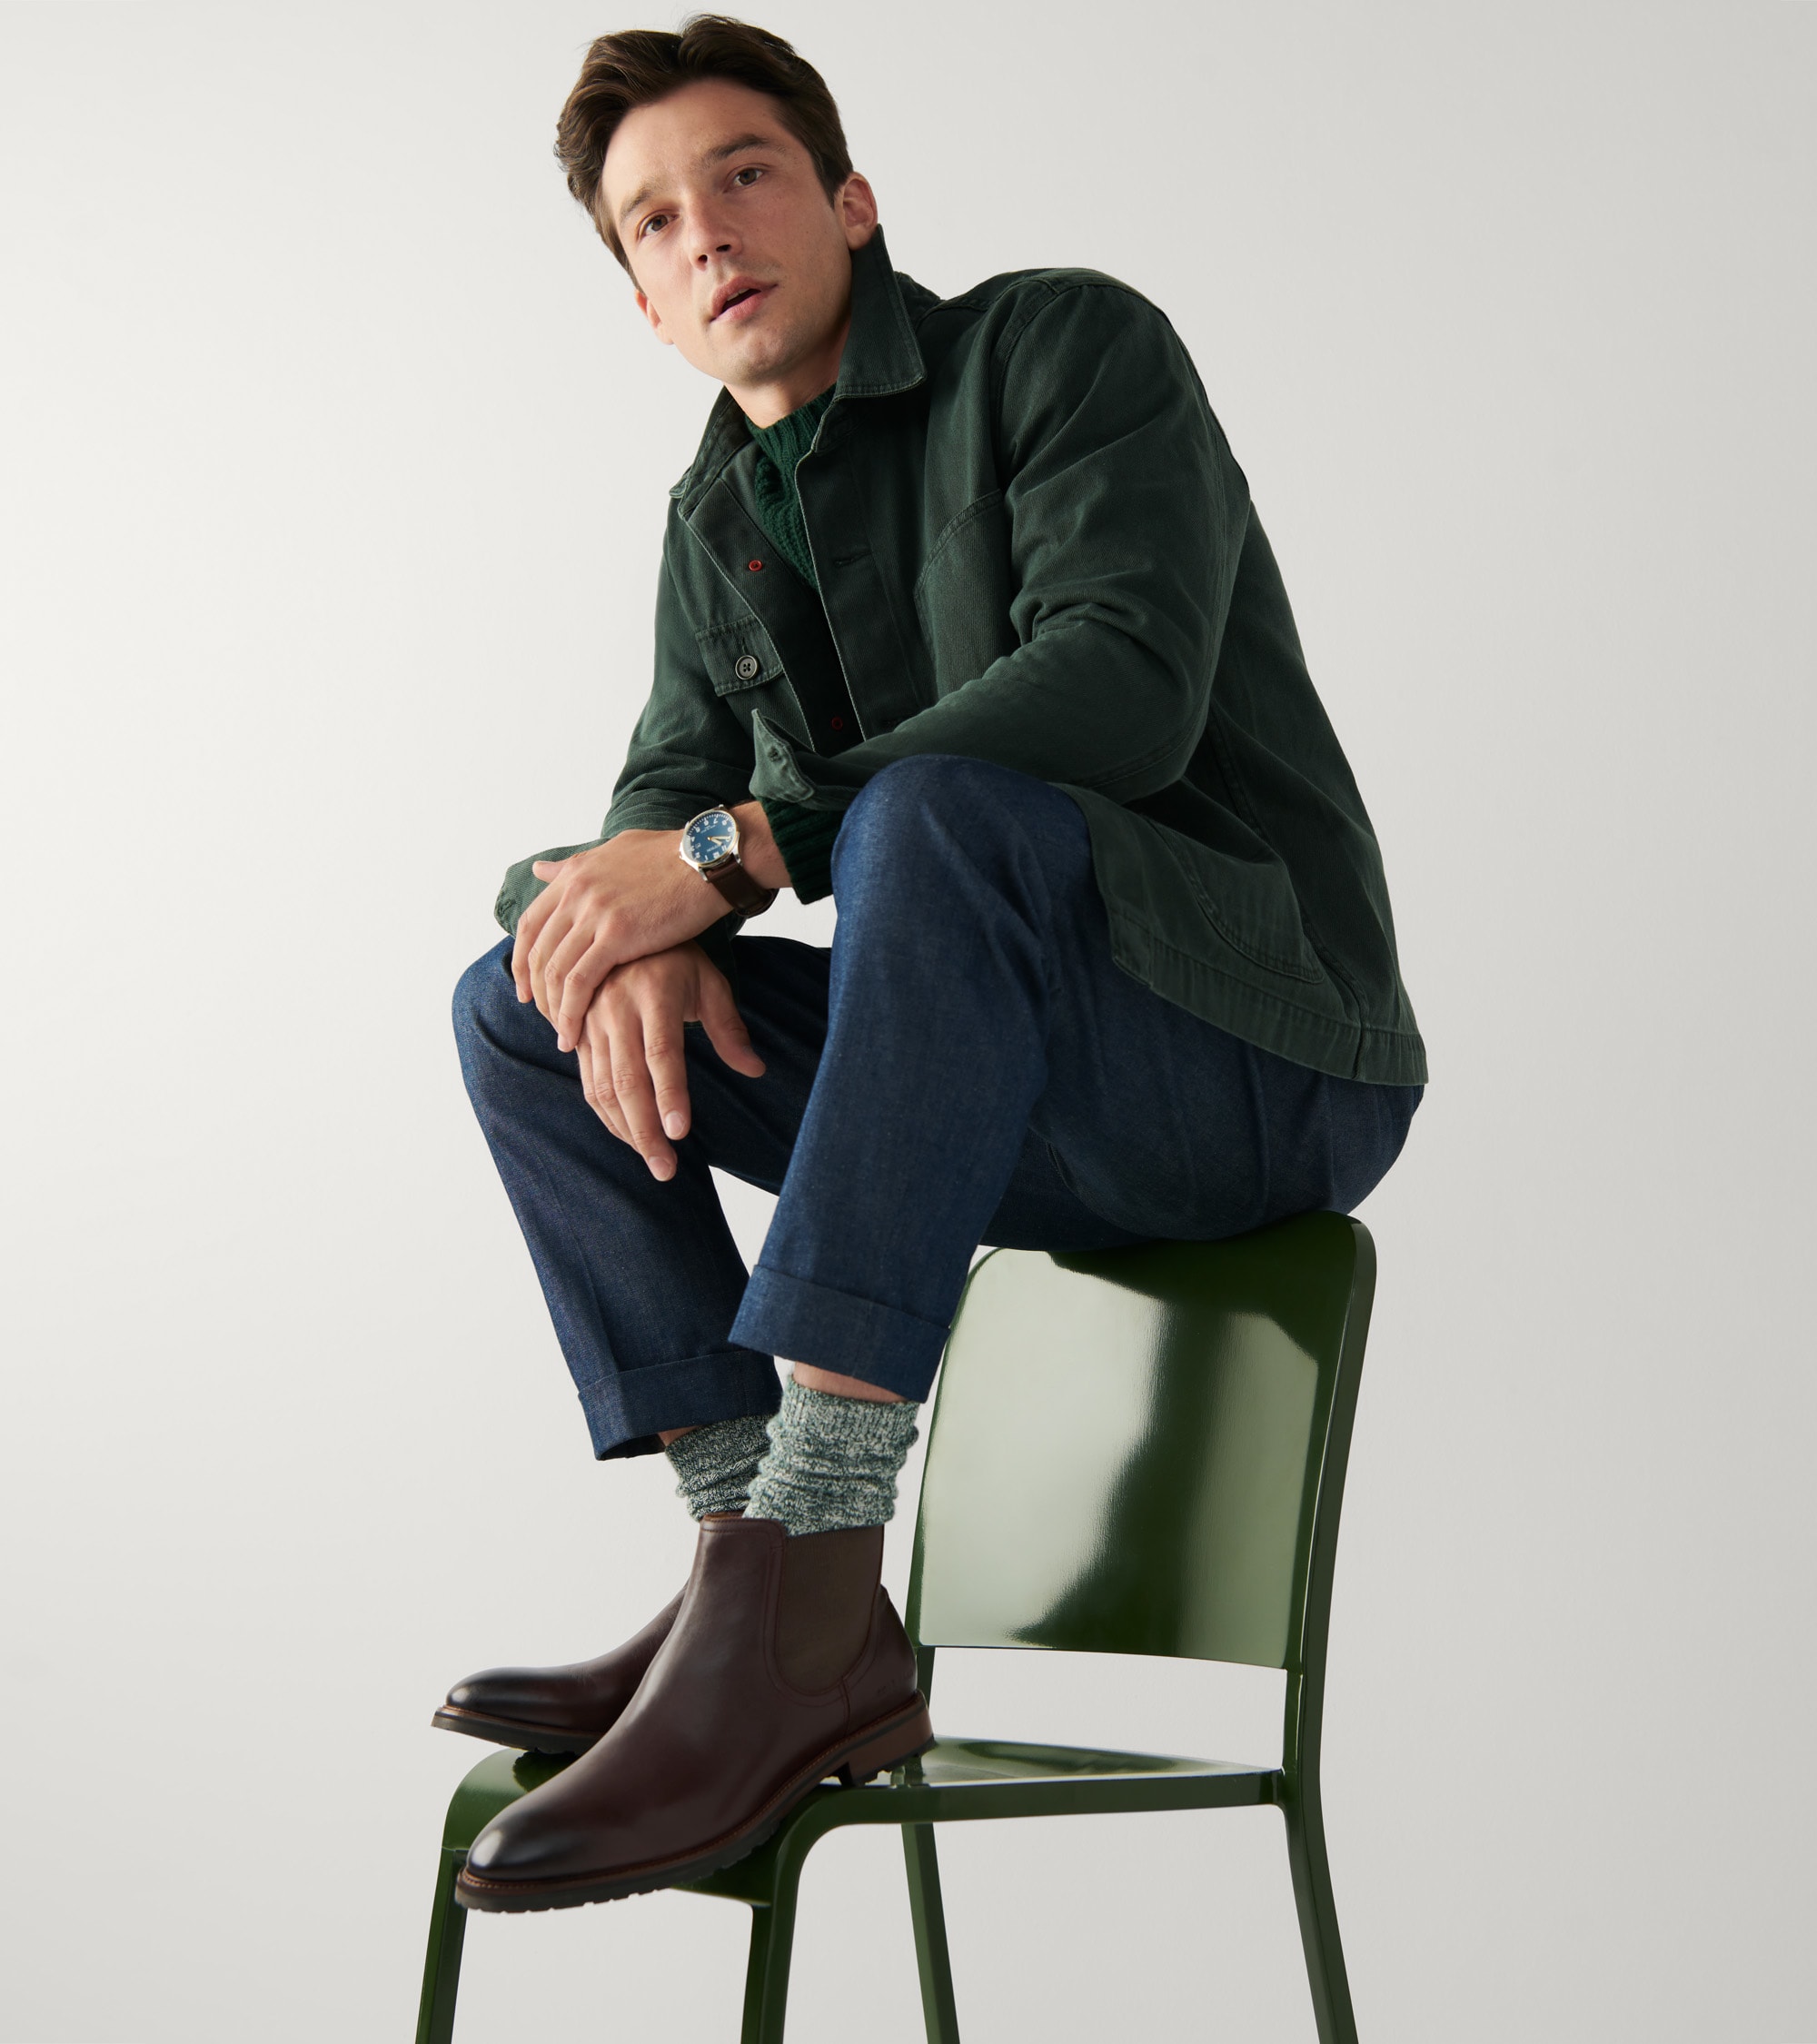 Male model wearing boots